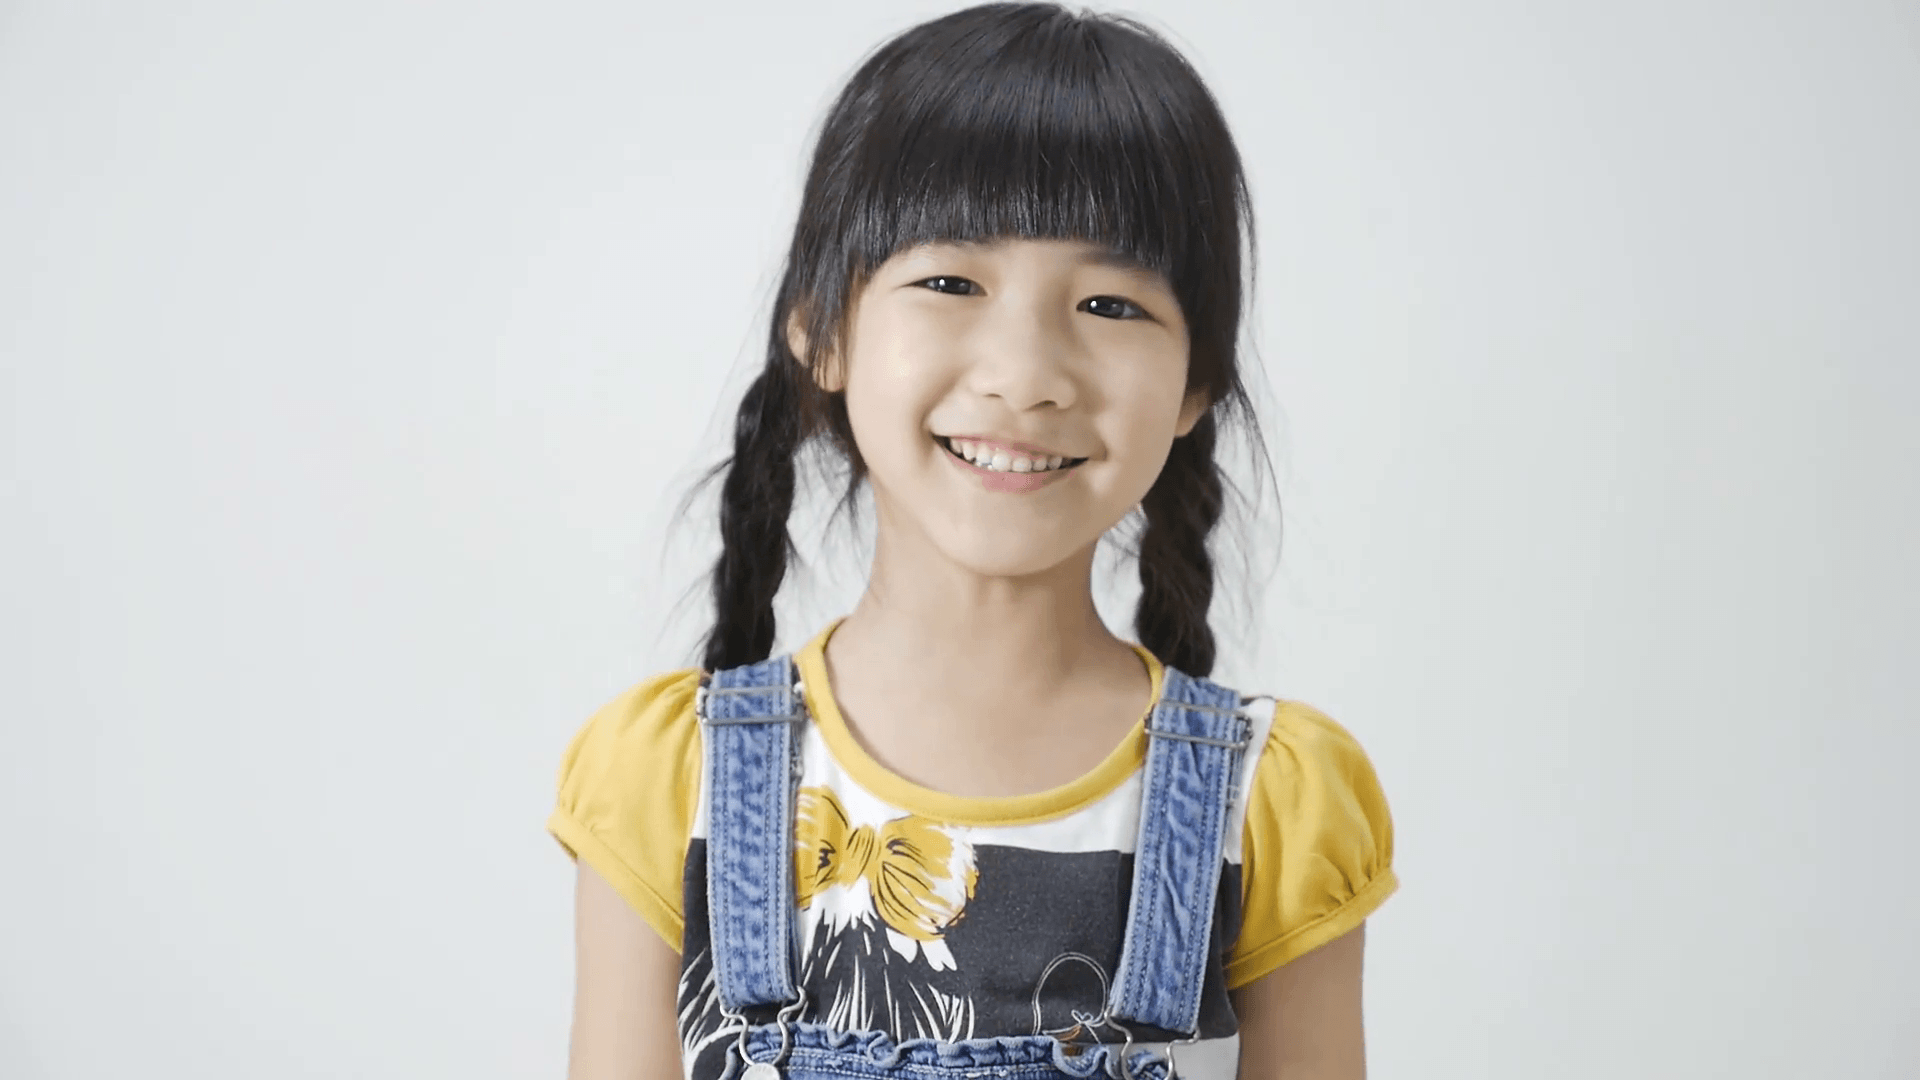 Girl little asian 